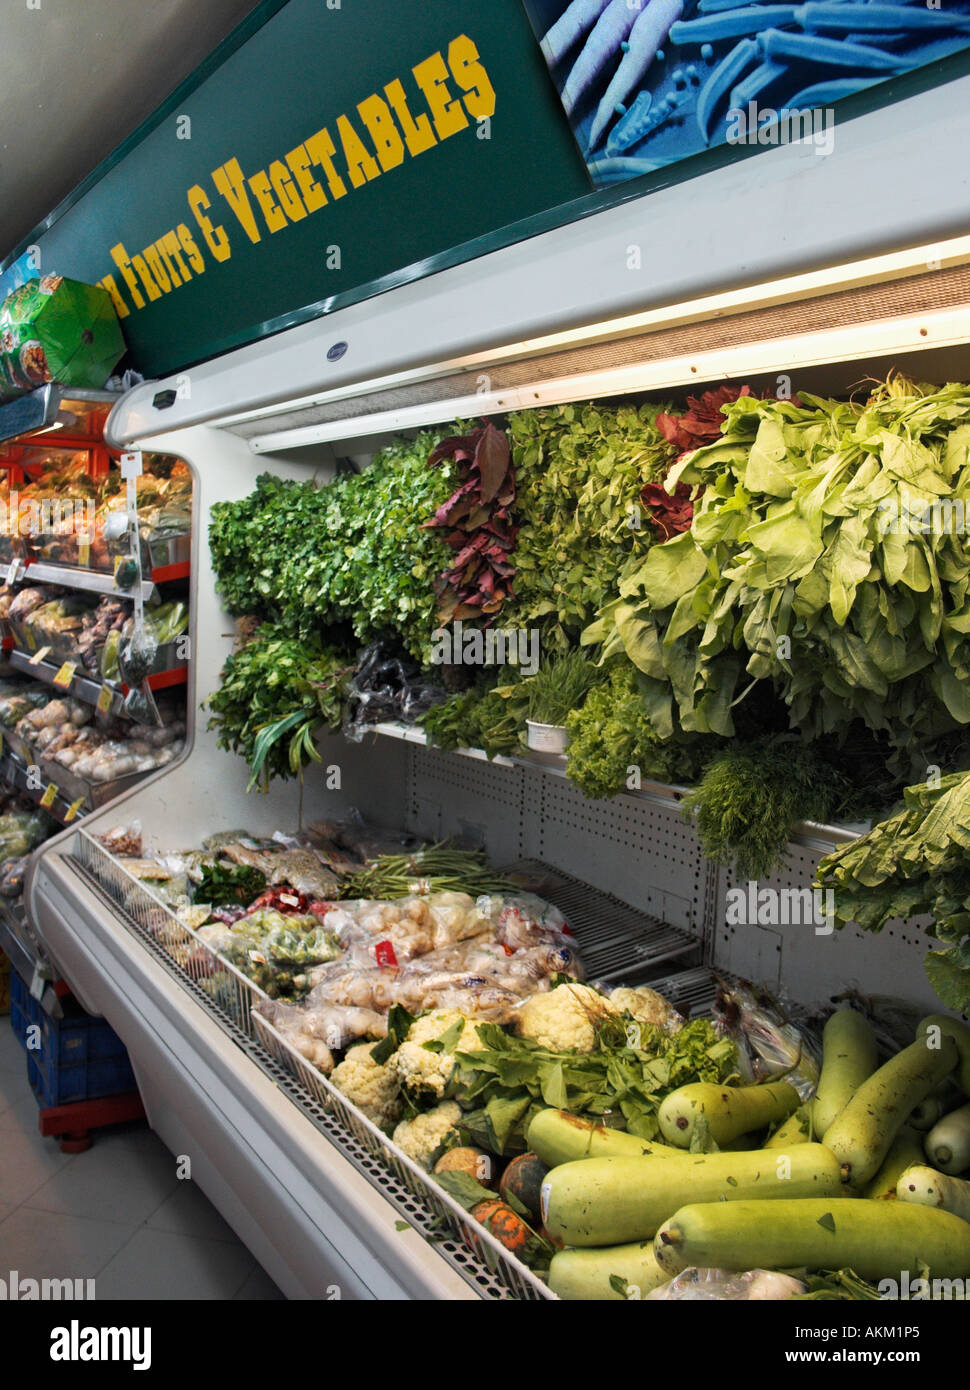 Gemüse im Supermarkt Chennai Madras Indien Stockfotografie - Alamy